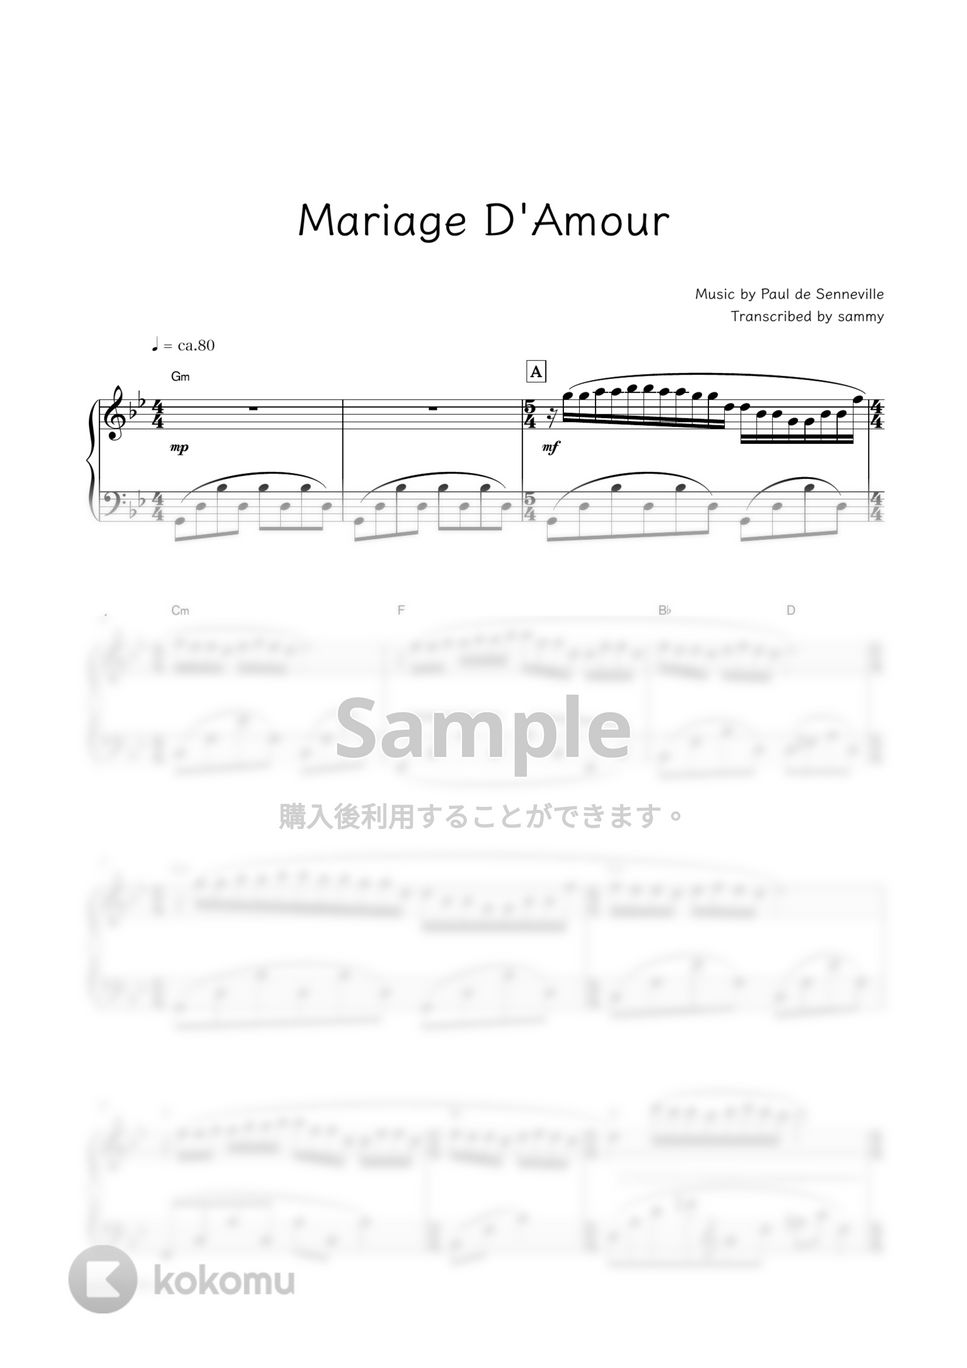 Paul de Senneville - Mariage D'Amour by sammy